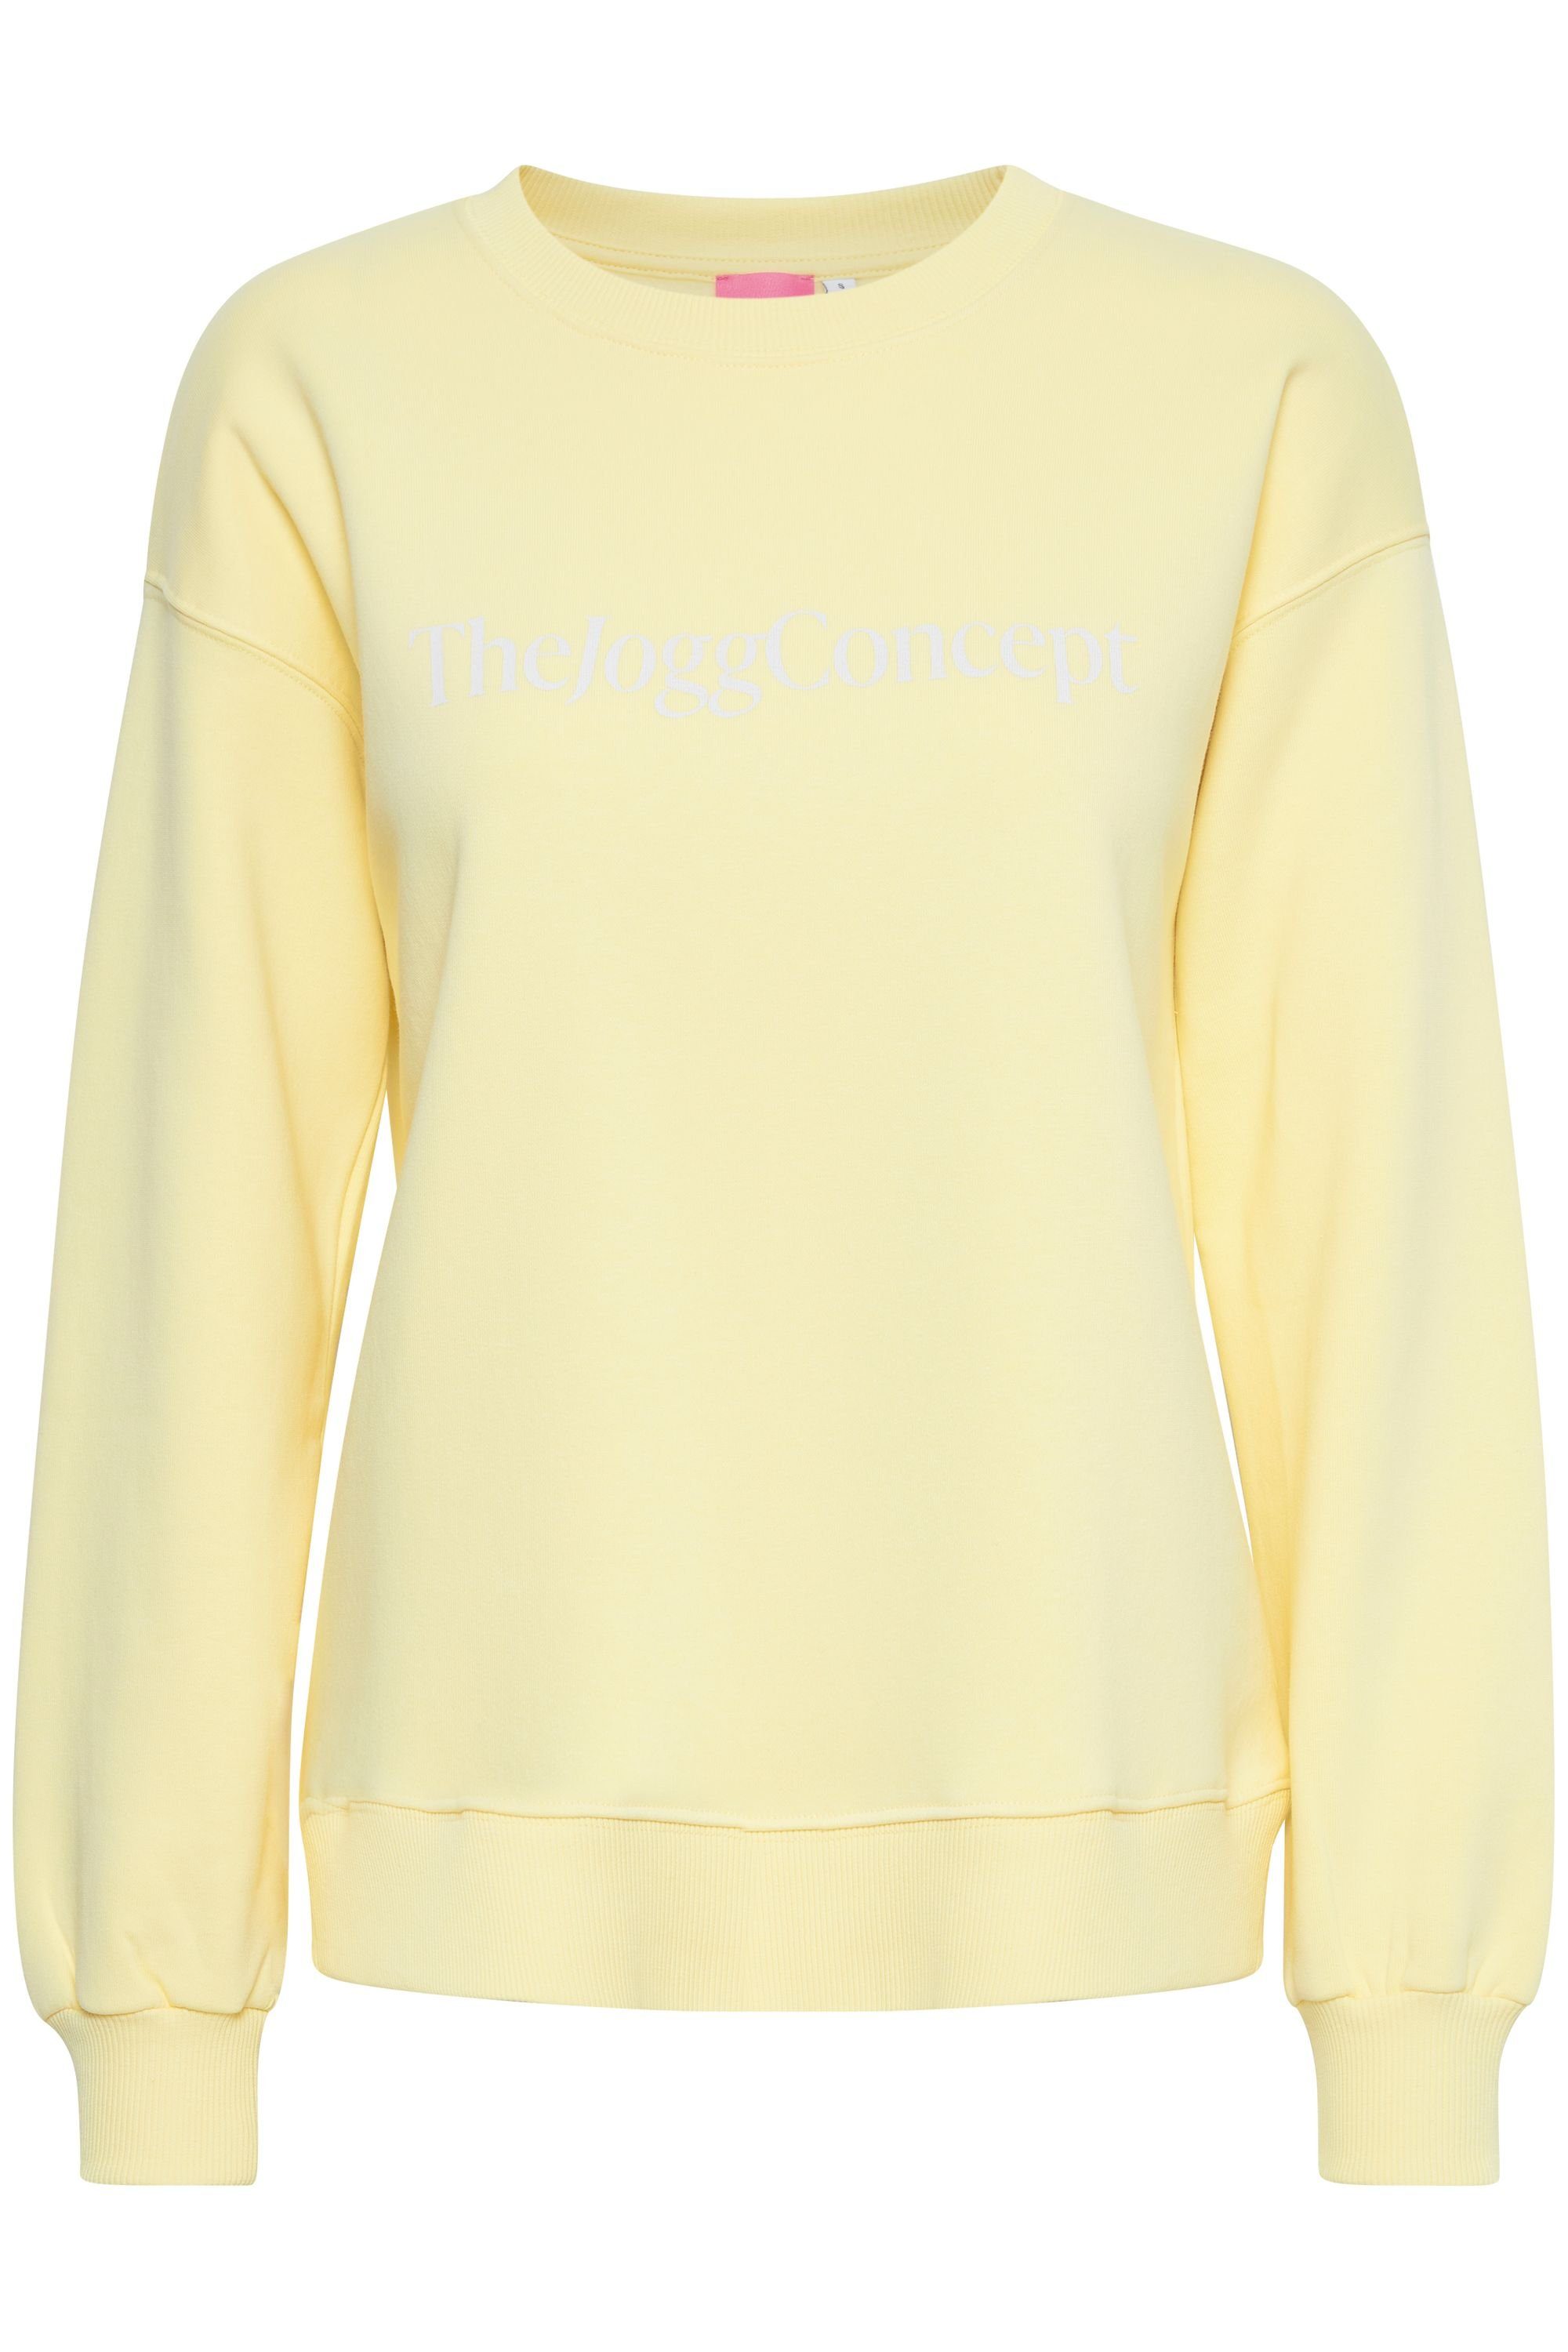 SWEATSHIRT Sportlicher Logo-Print (120711) - Meringue Sweatshirt Sweater mit TheJoggConcept. JCSAFINE 22800015 Lemon